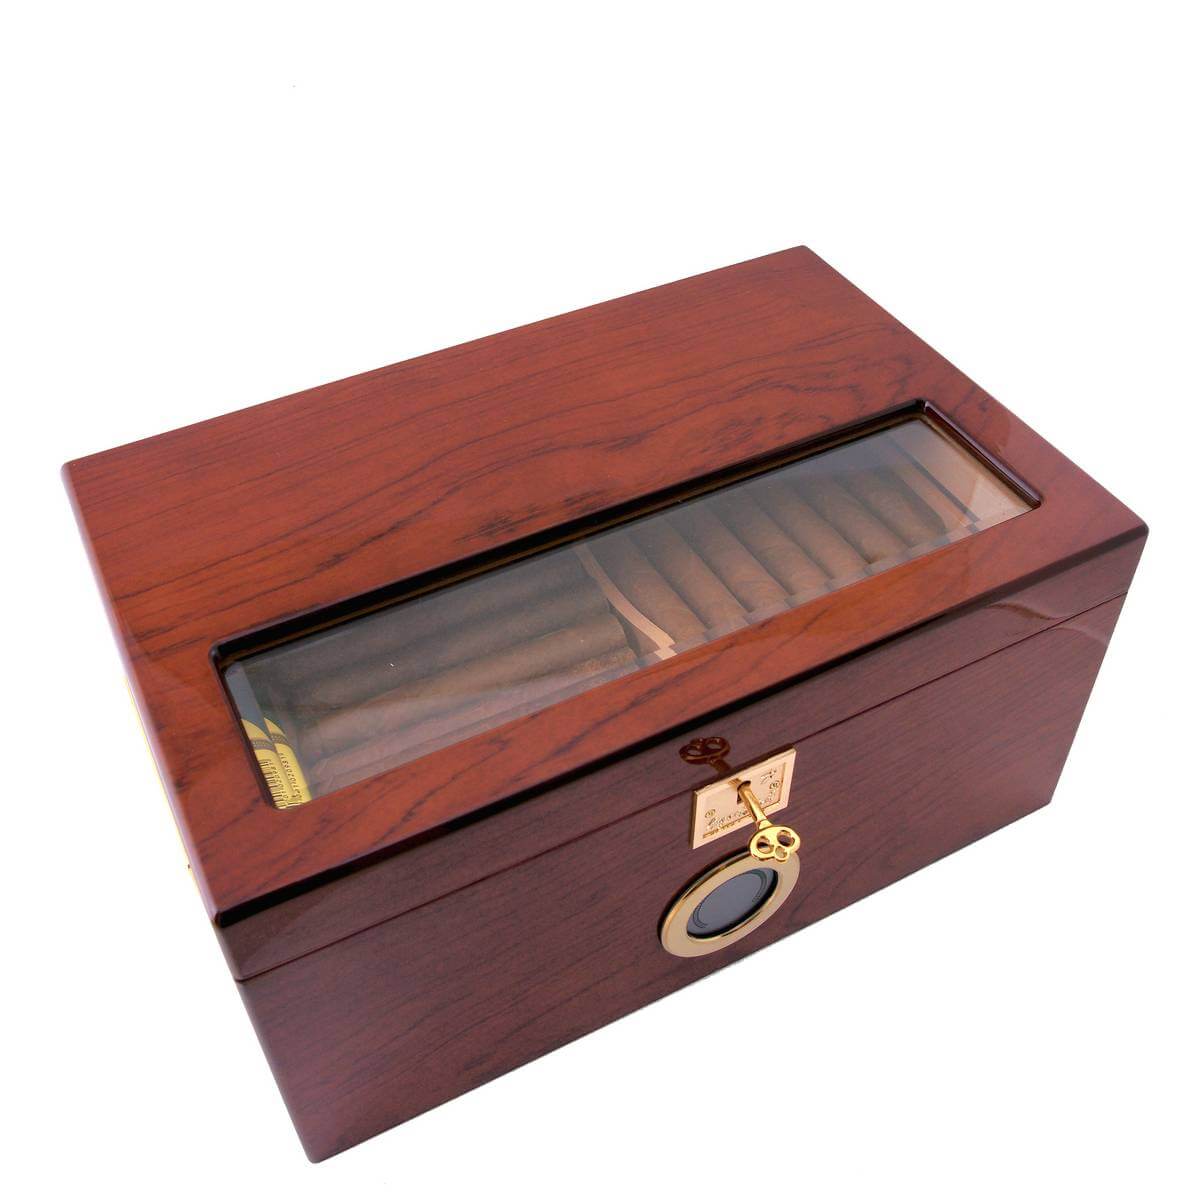 Humidors | Cigar Star - Cigar Humidors and Cigar Accessories Shipped ...